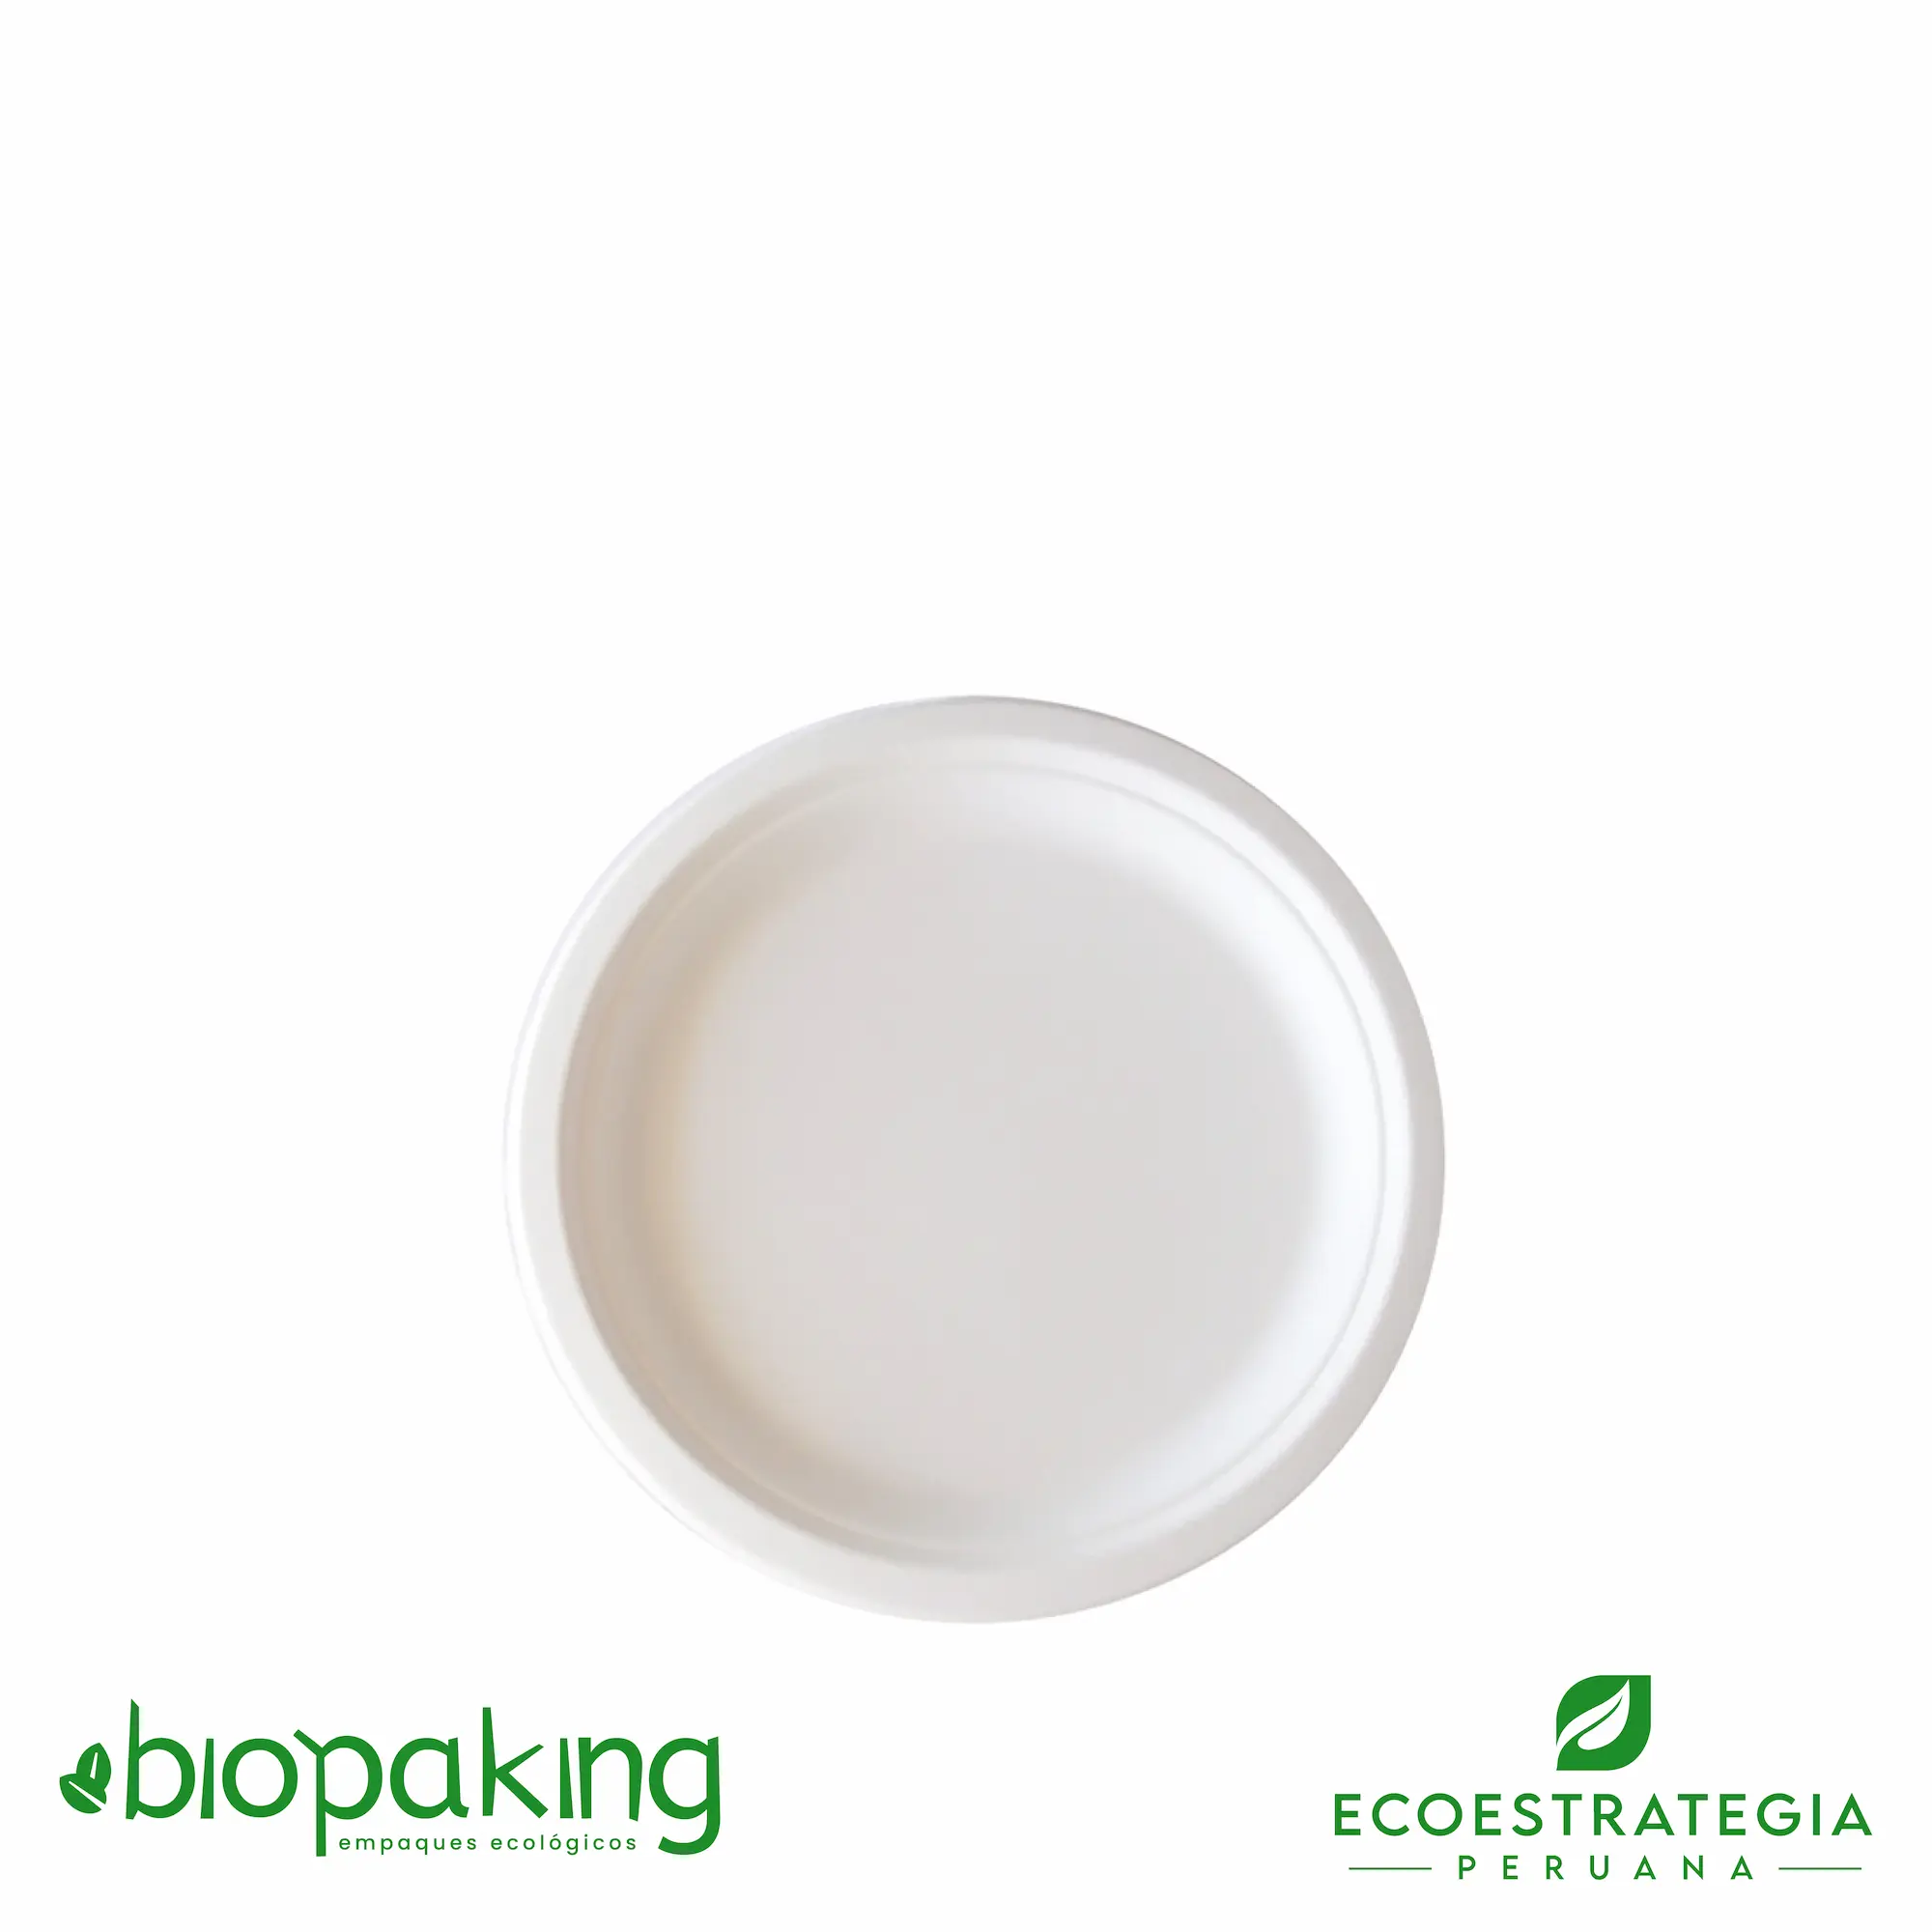 Este plato de 18cm está hecho a base del bagazo de caña de azúcar. Producto de materiales biodegradables. Cotiza tus tapers y envases ecológicos y descartables.